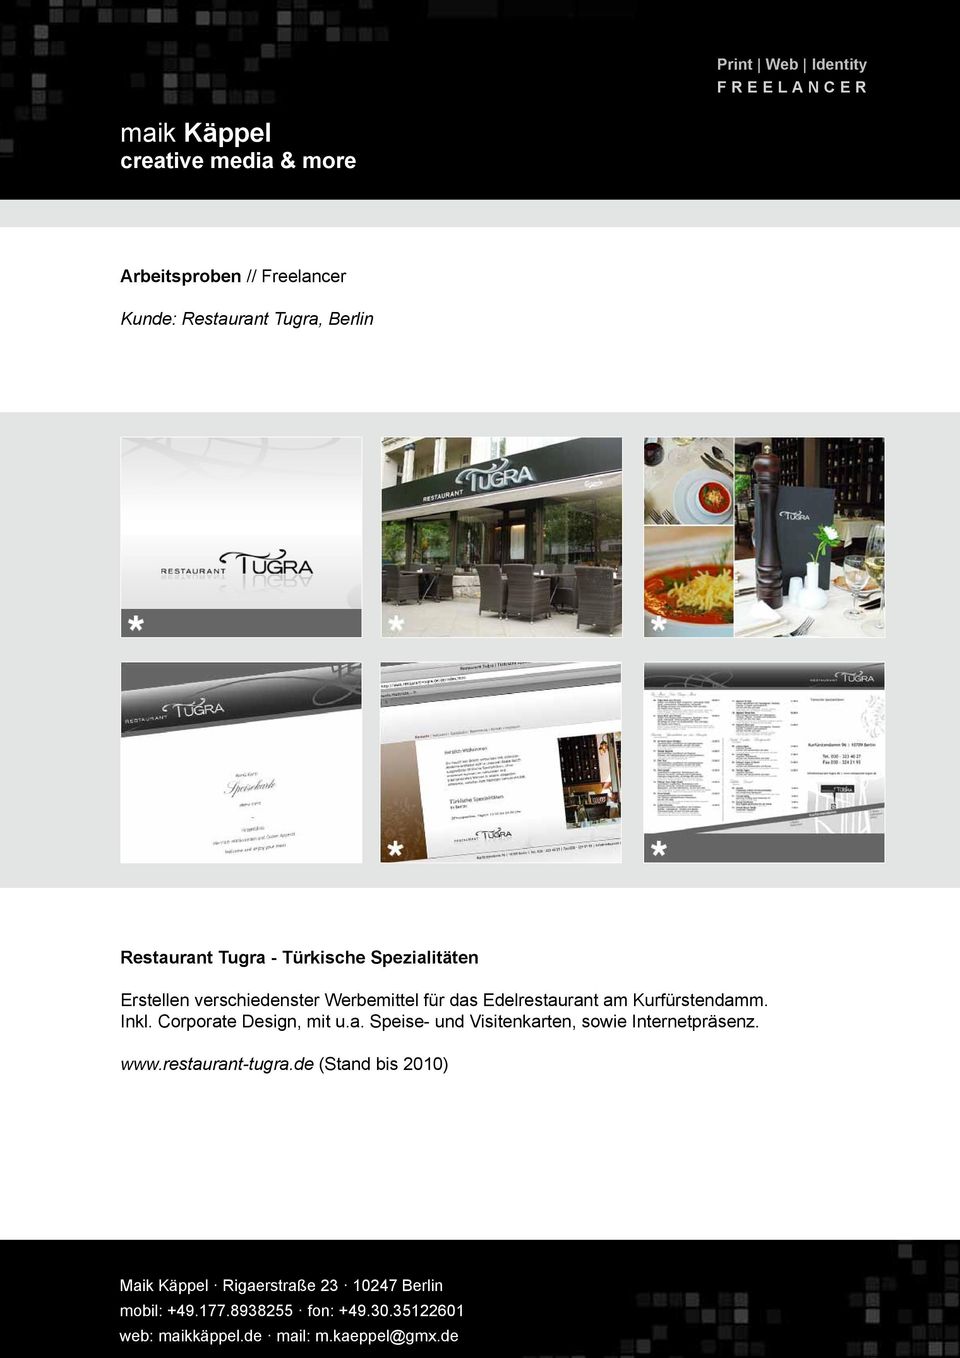 Edelrestaurant am Kurfürstendamm. Inkl. Corporate Design, mit u.a. Speise- und Visitenkarten, sowie Internetpräsenz.